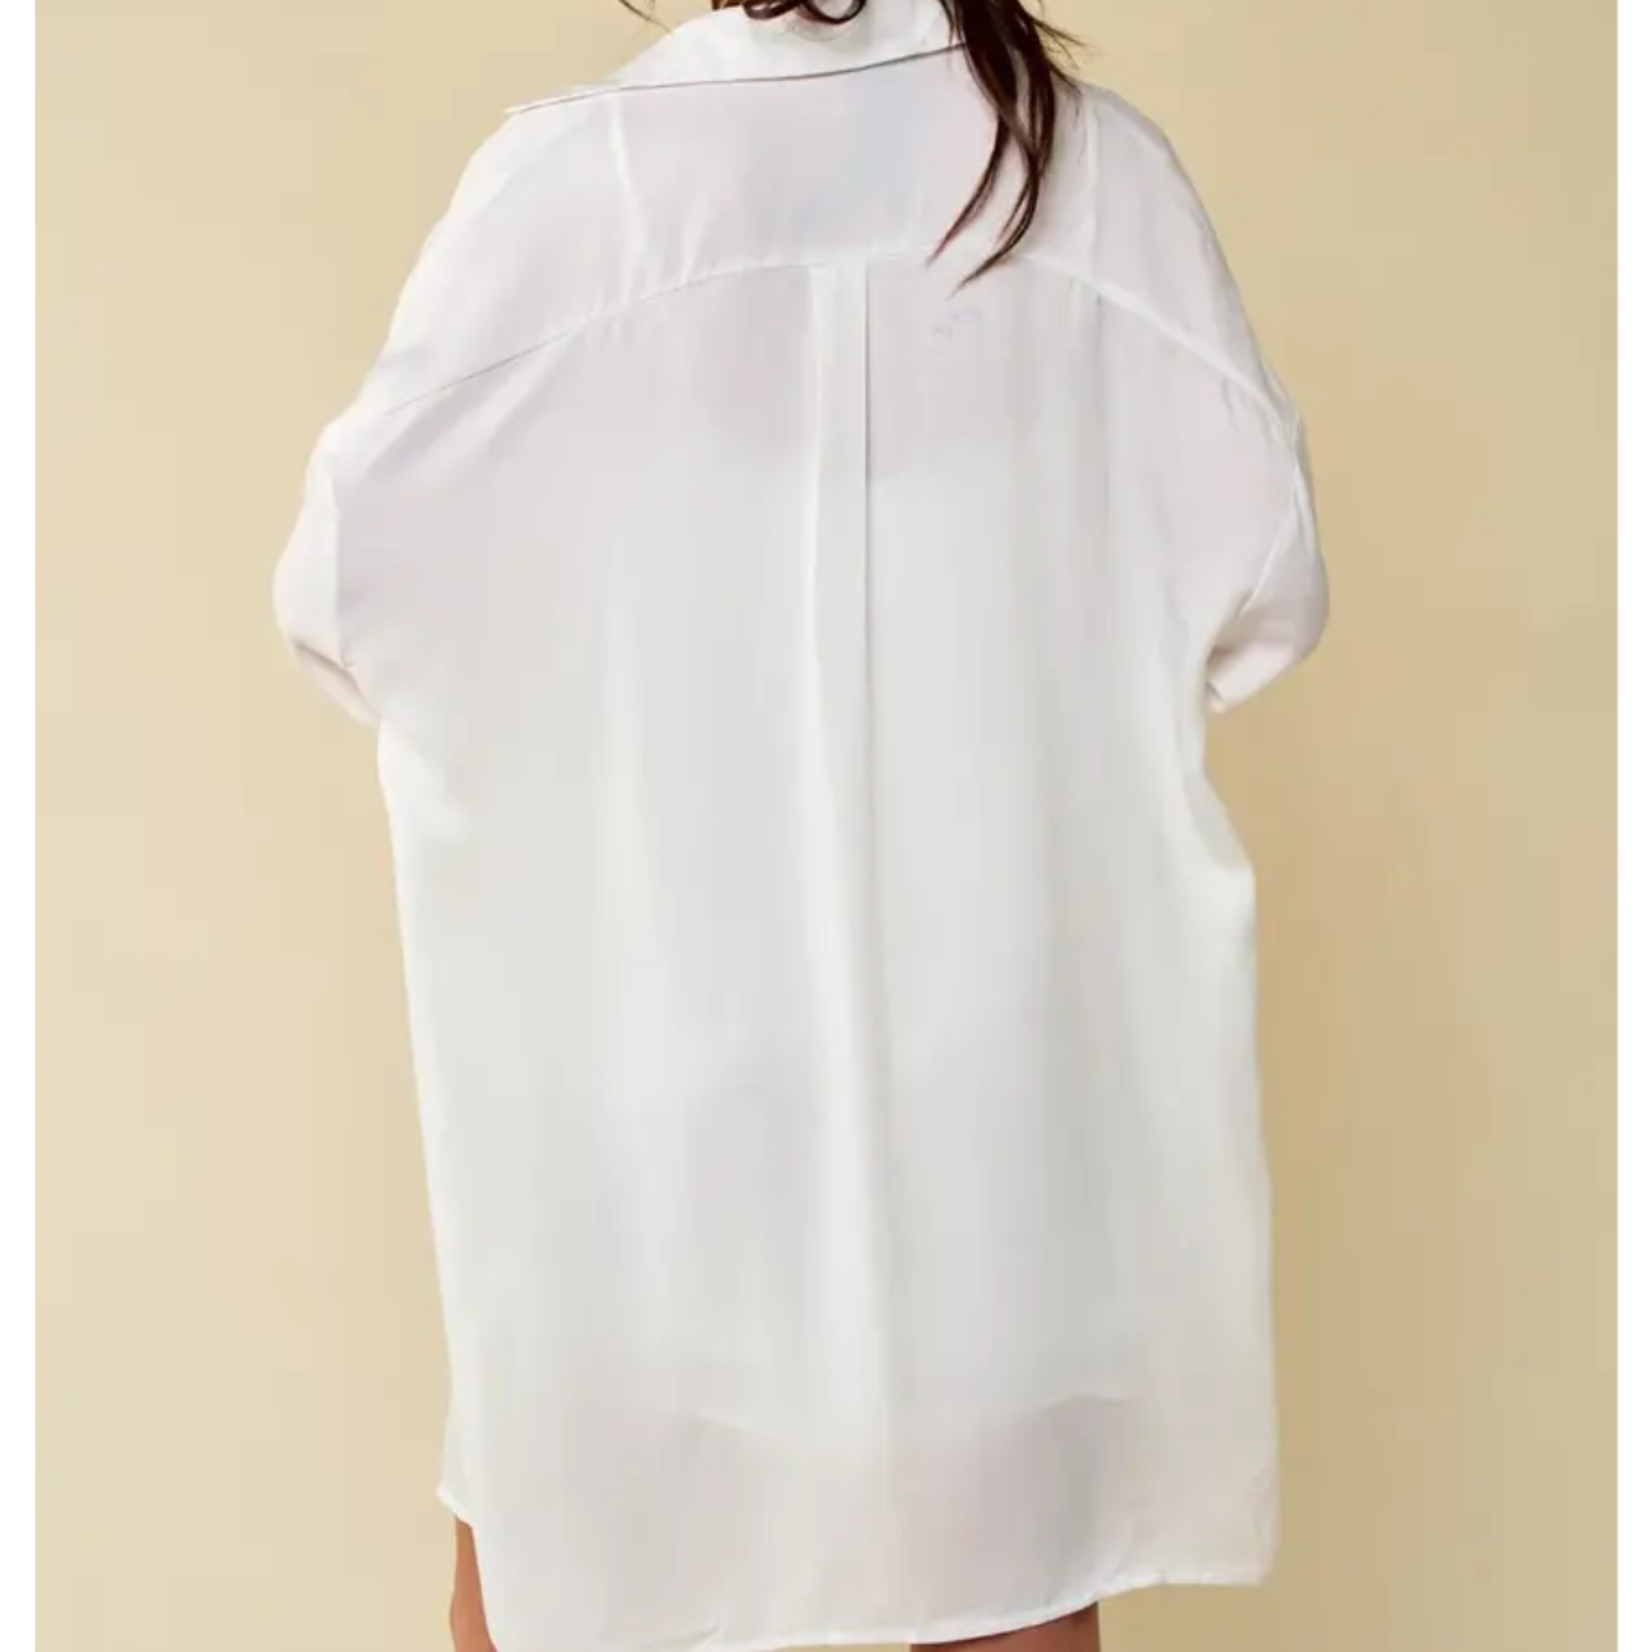 Harper Dress/ Long Sleeve Collar Shirt